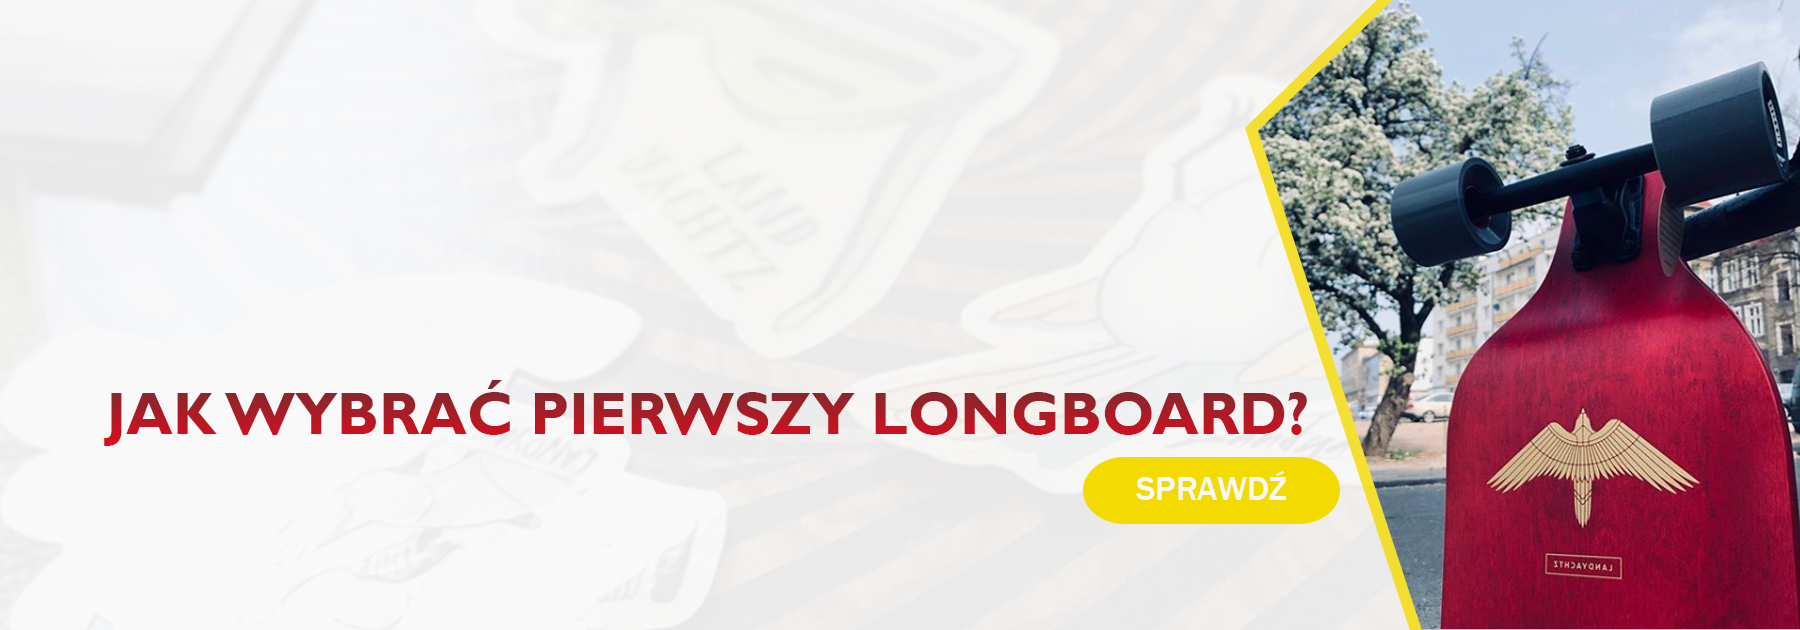 Jak wybrać pierwszy longboard?